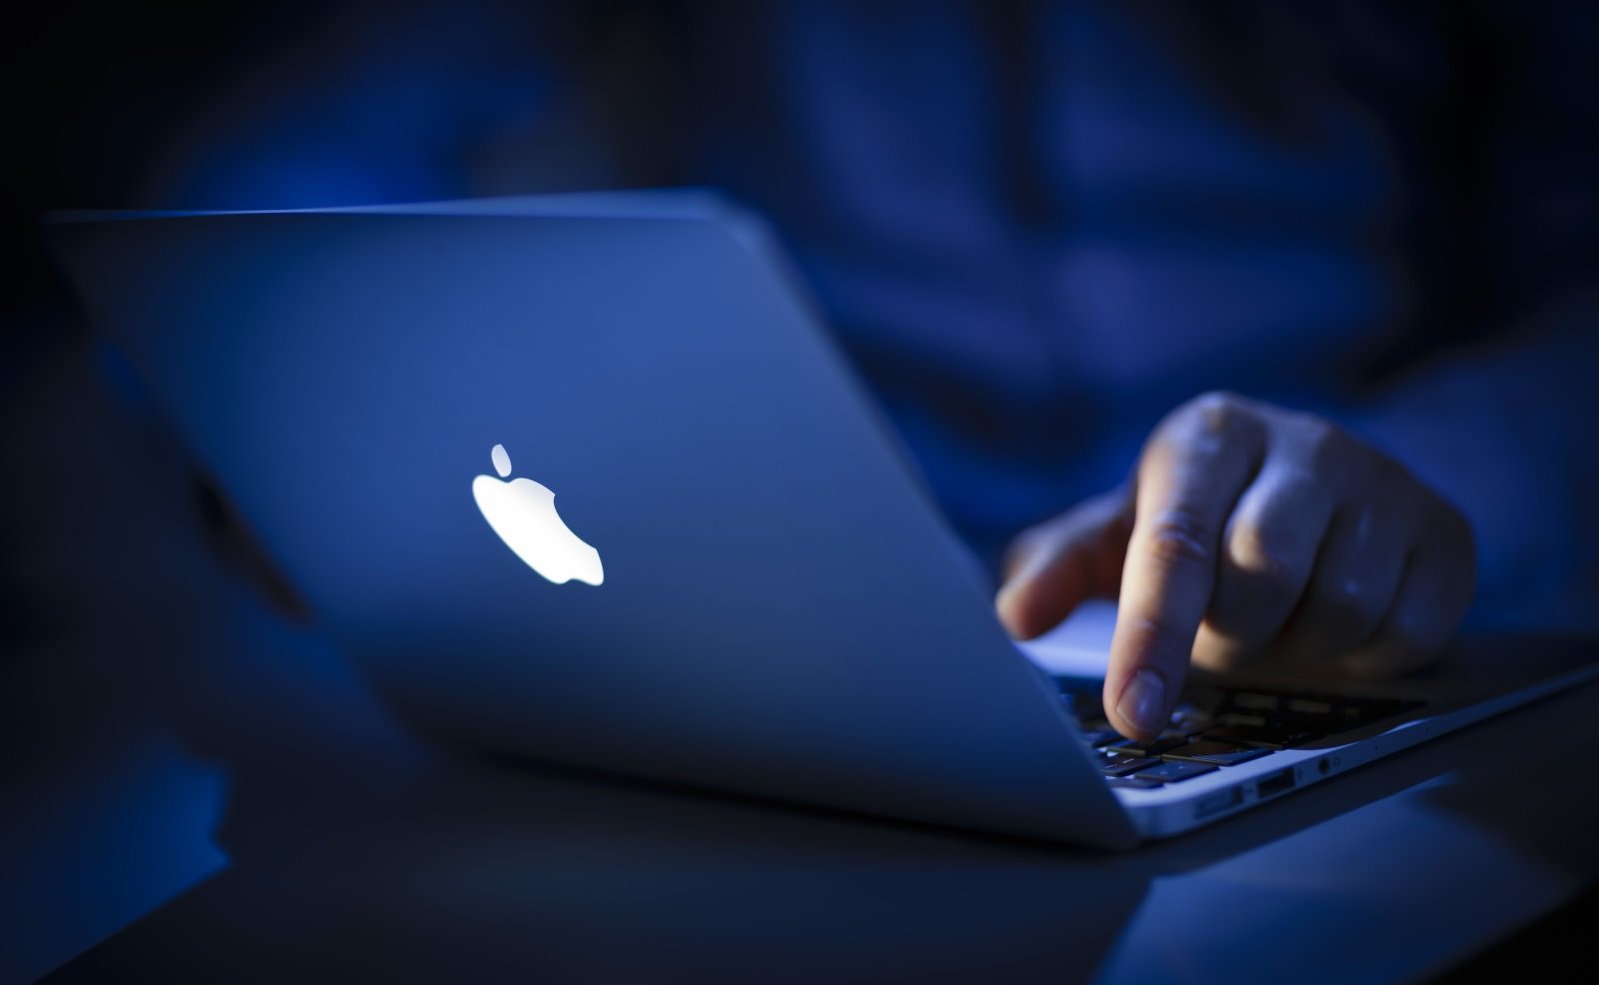 Ανανεωμένο και οικονομικότερο MacBook Air φημολογείται ότι θα παρουσιάσει η Apple την Άνοιξη